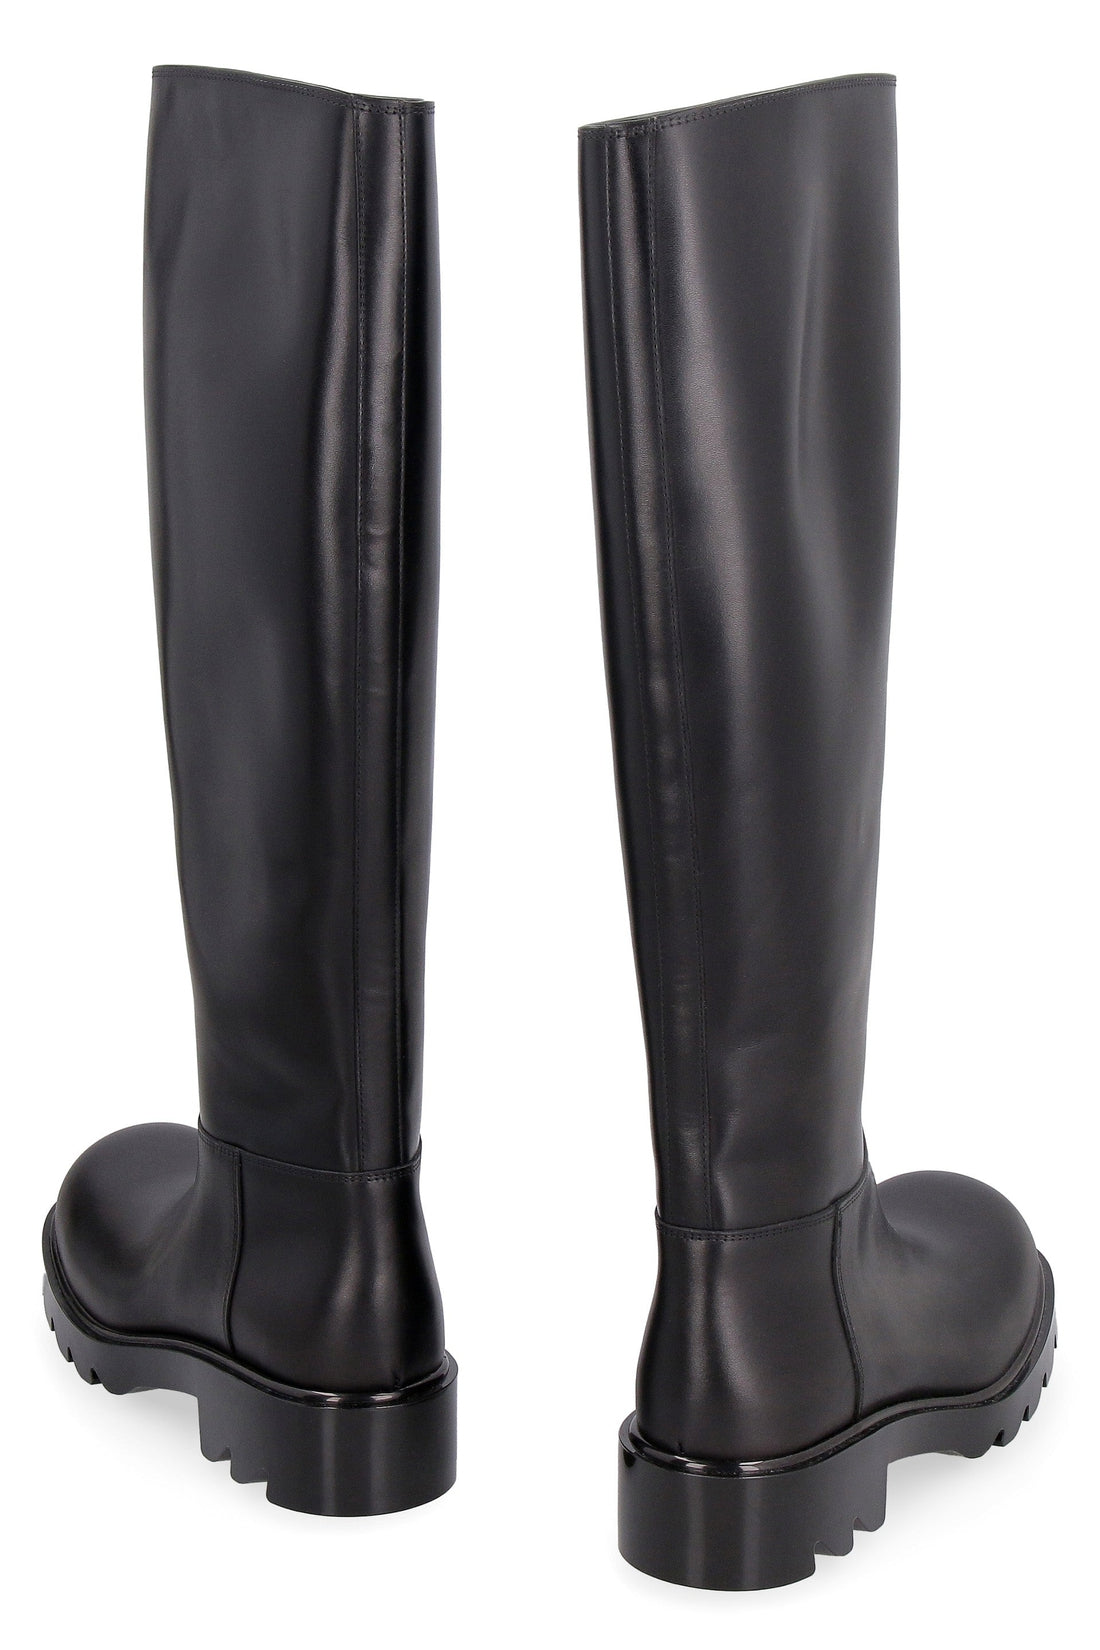 Bottega Veneta-OUTLET-SALE-Strut leather boots-ARCHIVIST